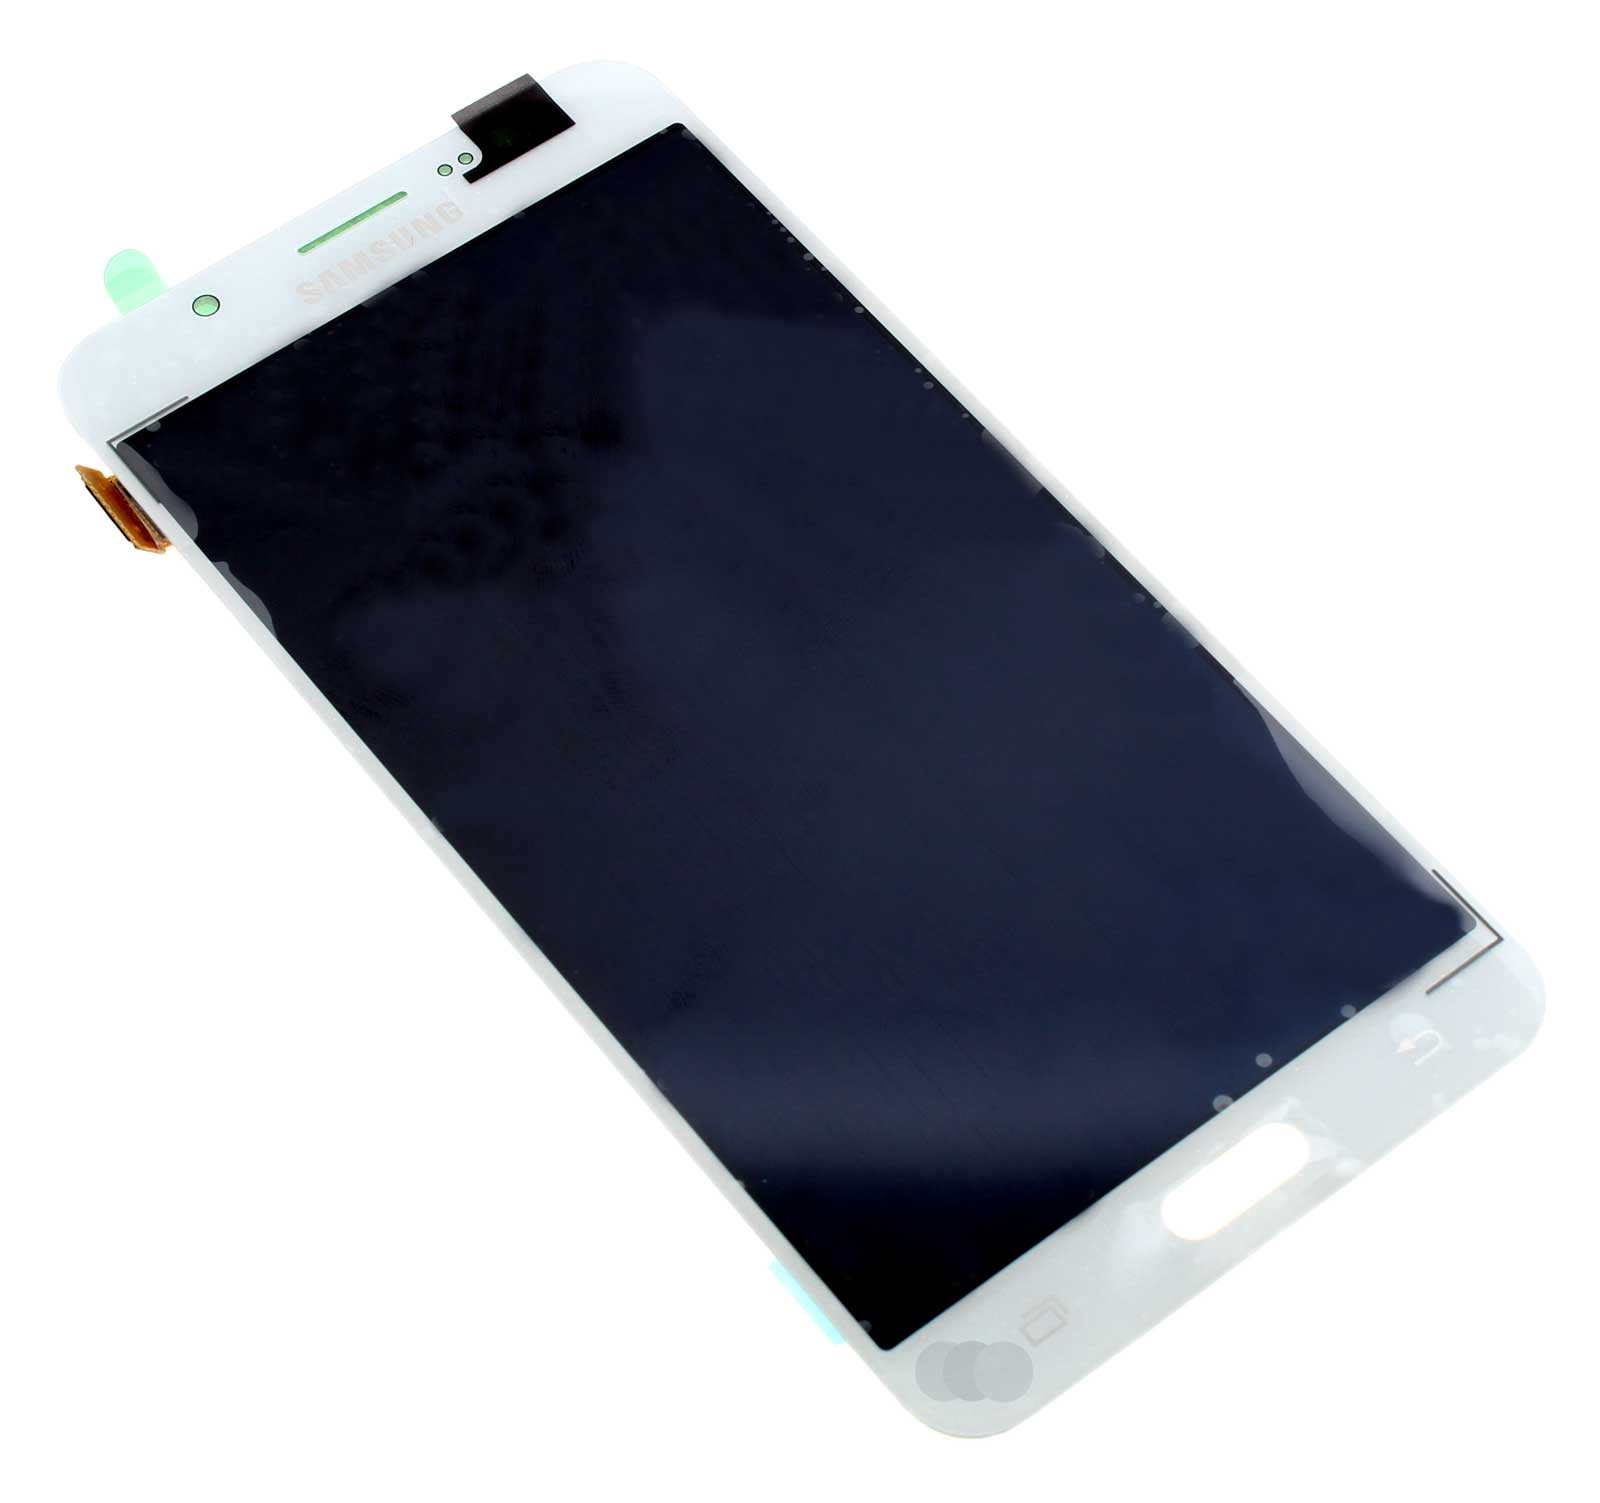 Display, LCD, Touchscreen, Digitizer, Displayeinheit in Farbe weiß für Samsung Galaxy J7 2016 SM-J710F Smartphone, Handy, Mobiltelefon. Wie Ersatzteil Teilenummer GH97-18931C